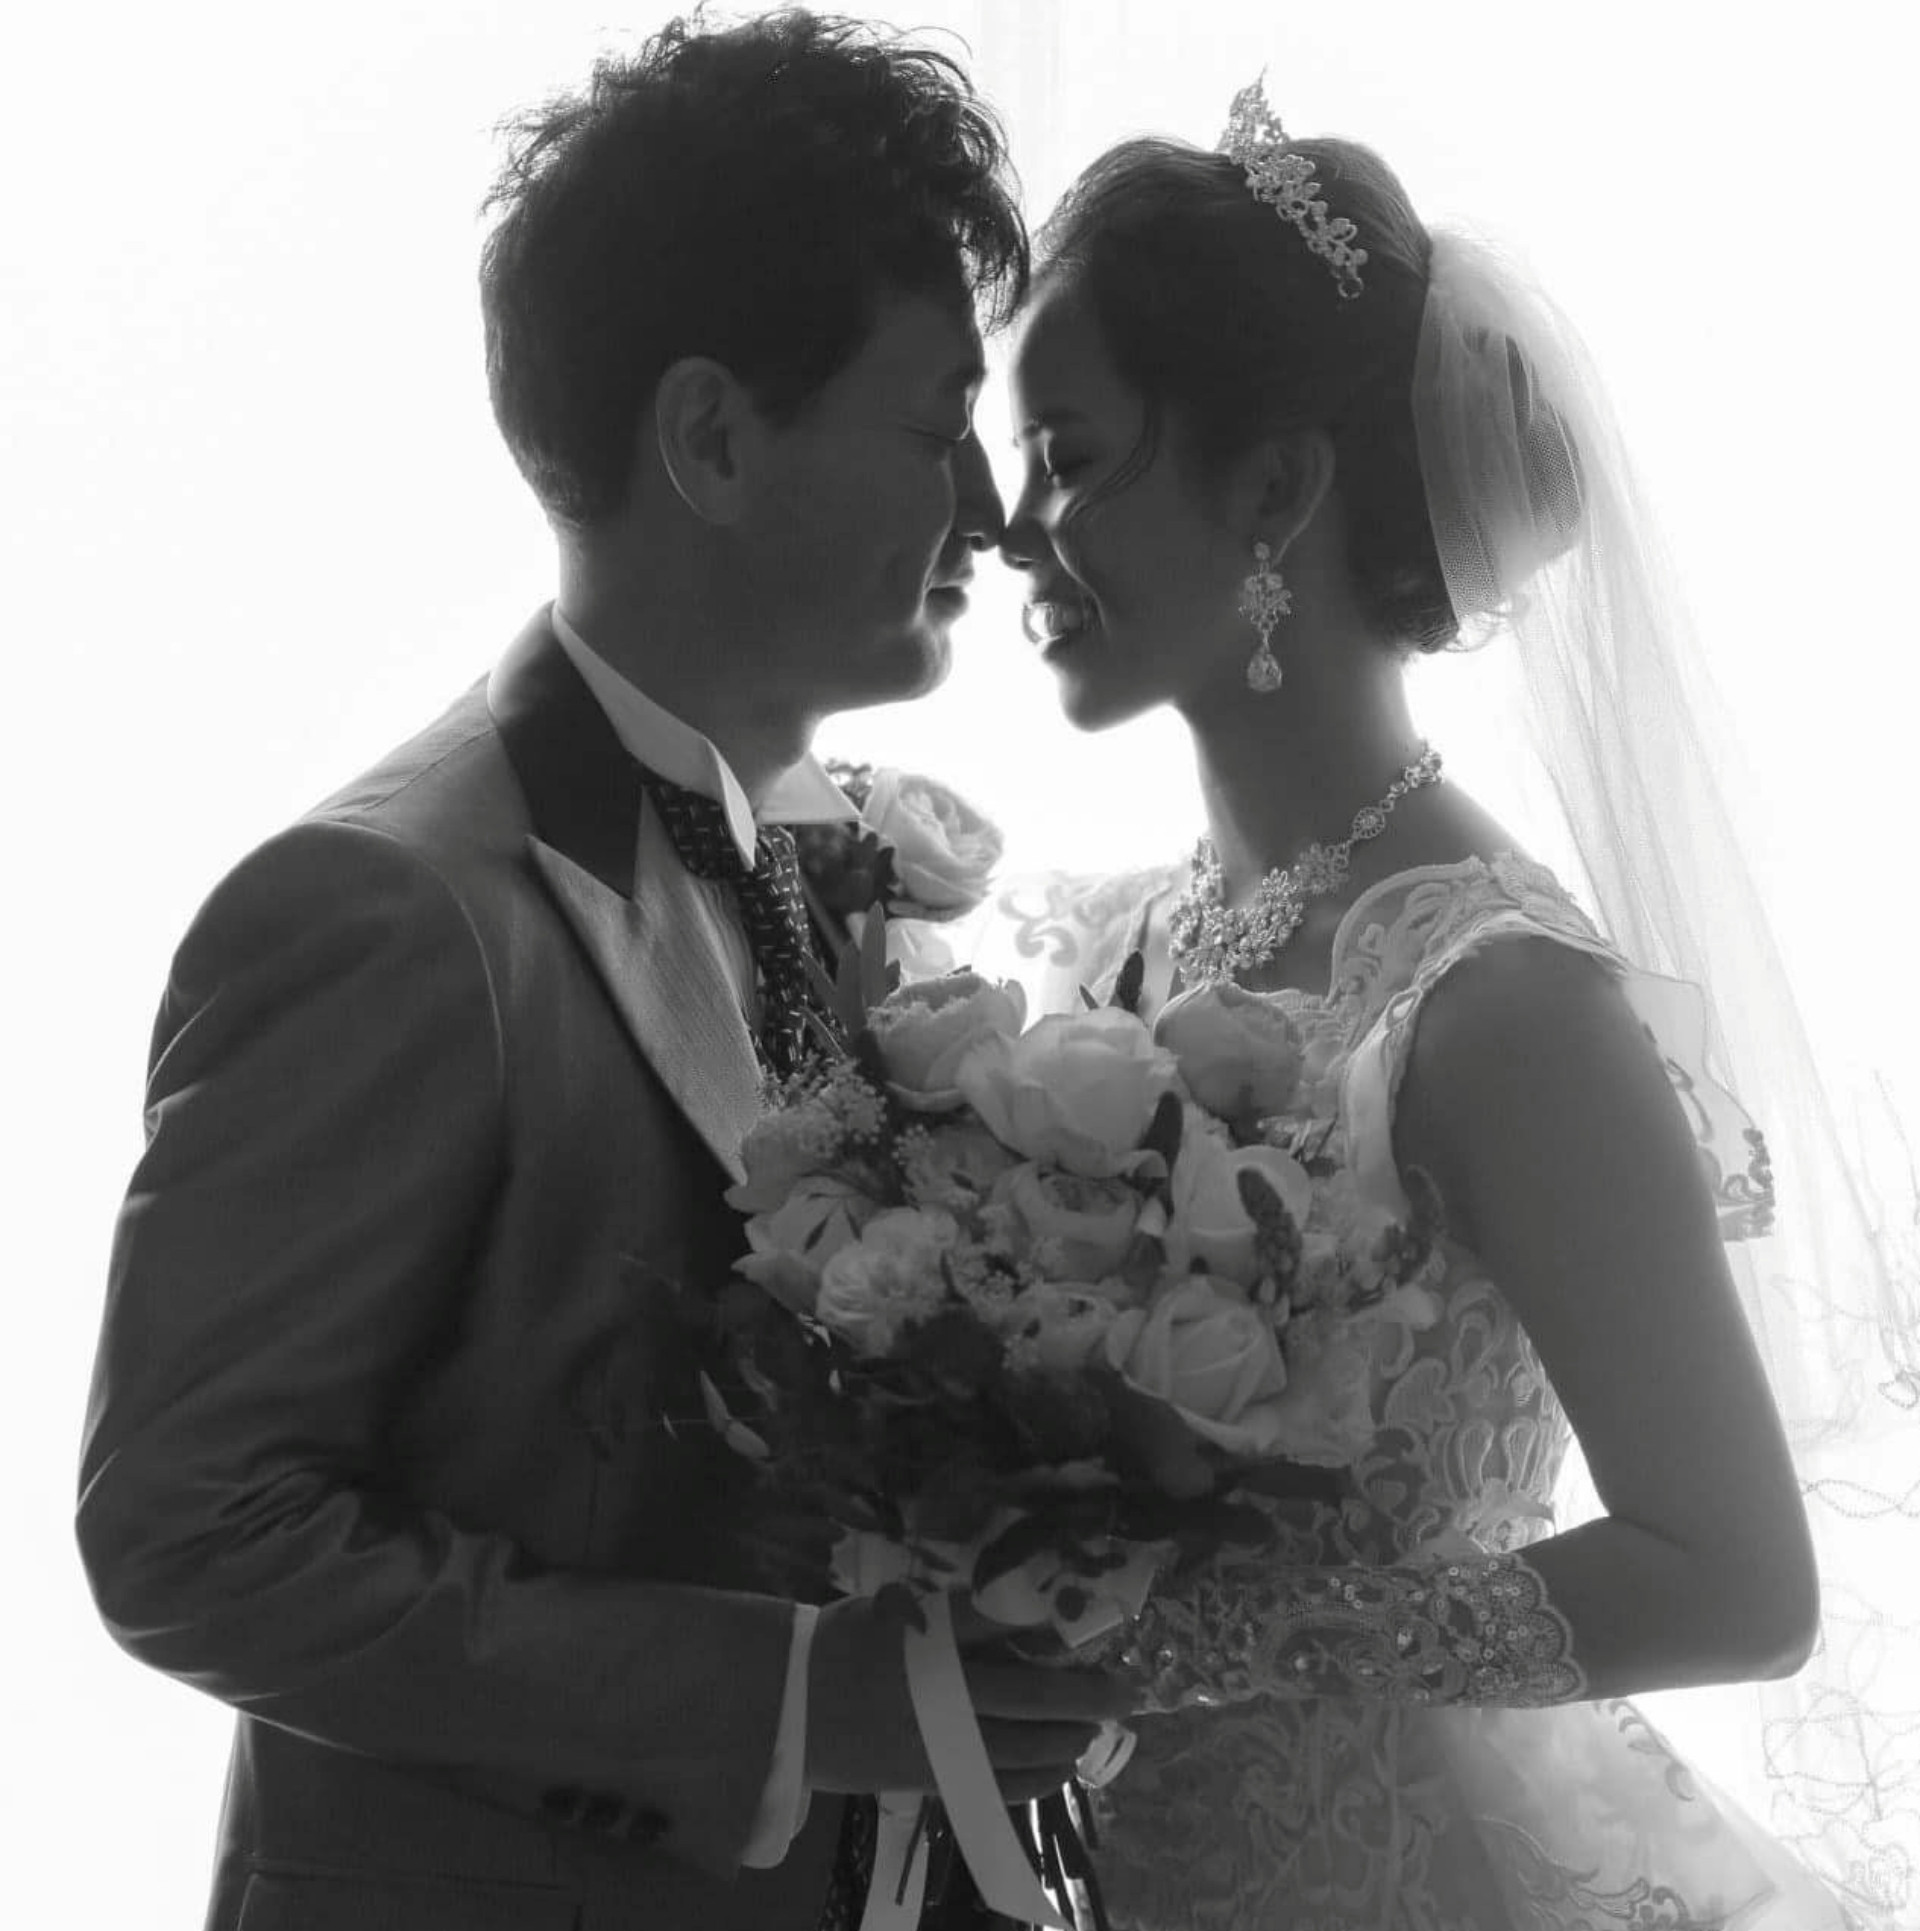 Chồng Nhật bật khóc khi đọc thư vợ Việt trong tiệc kỷ niệm ngày cưới